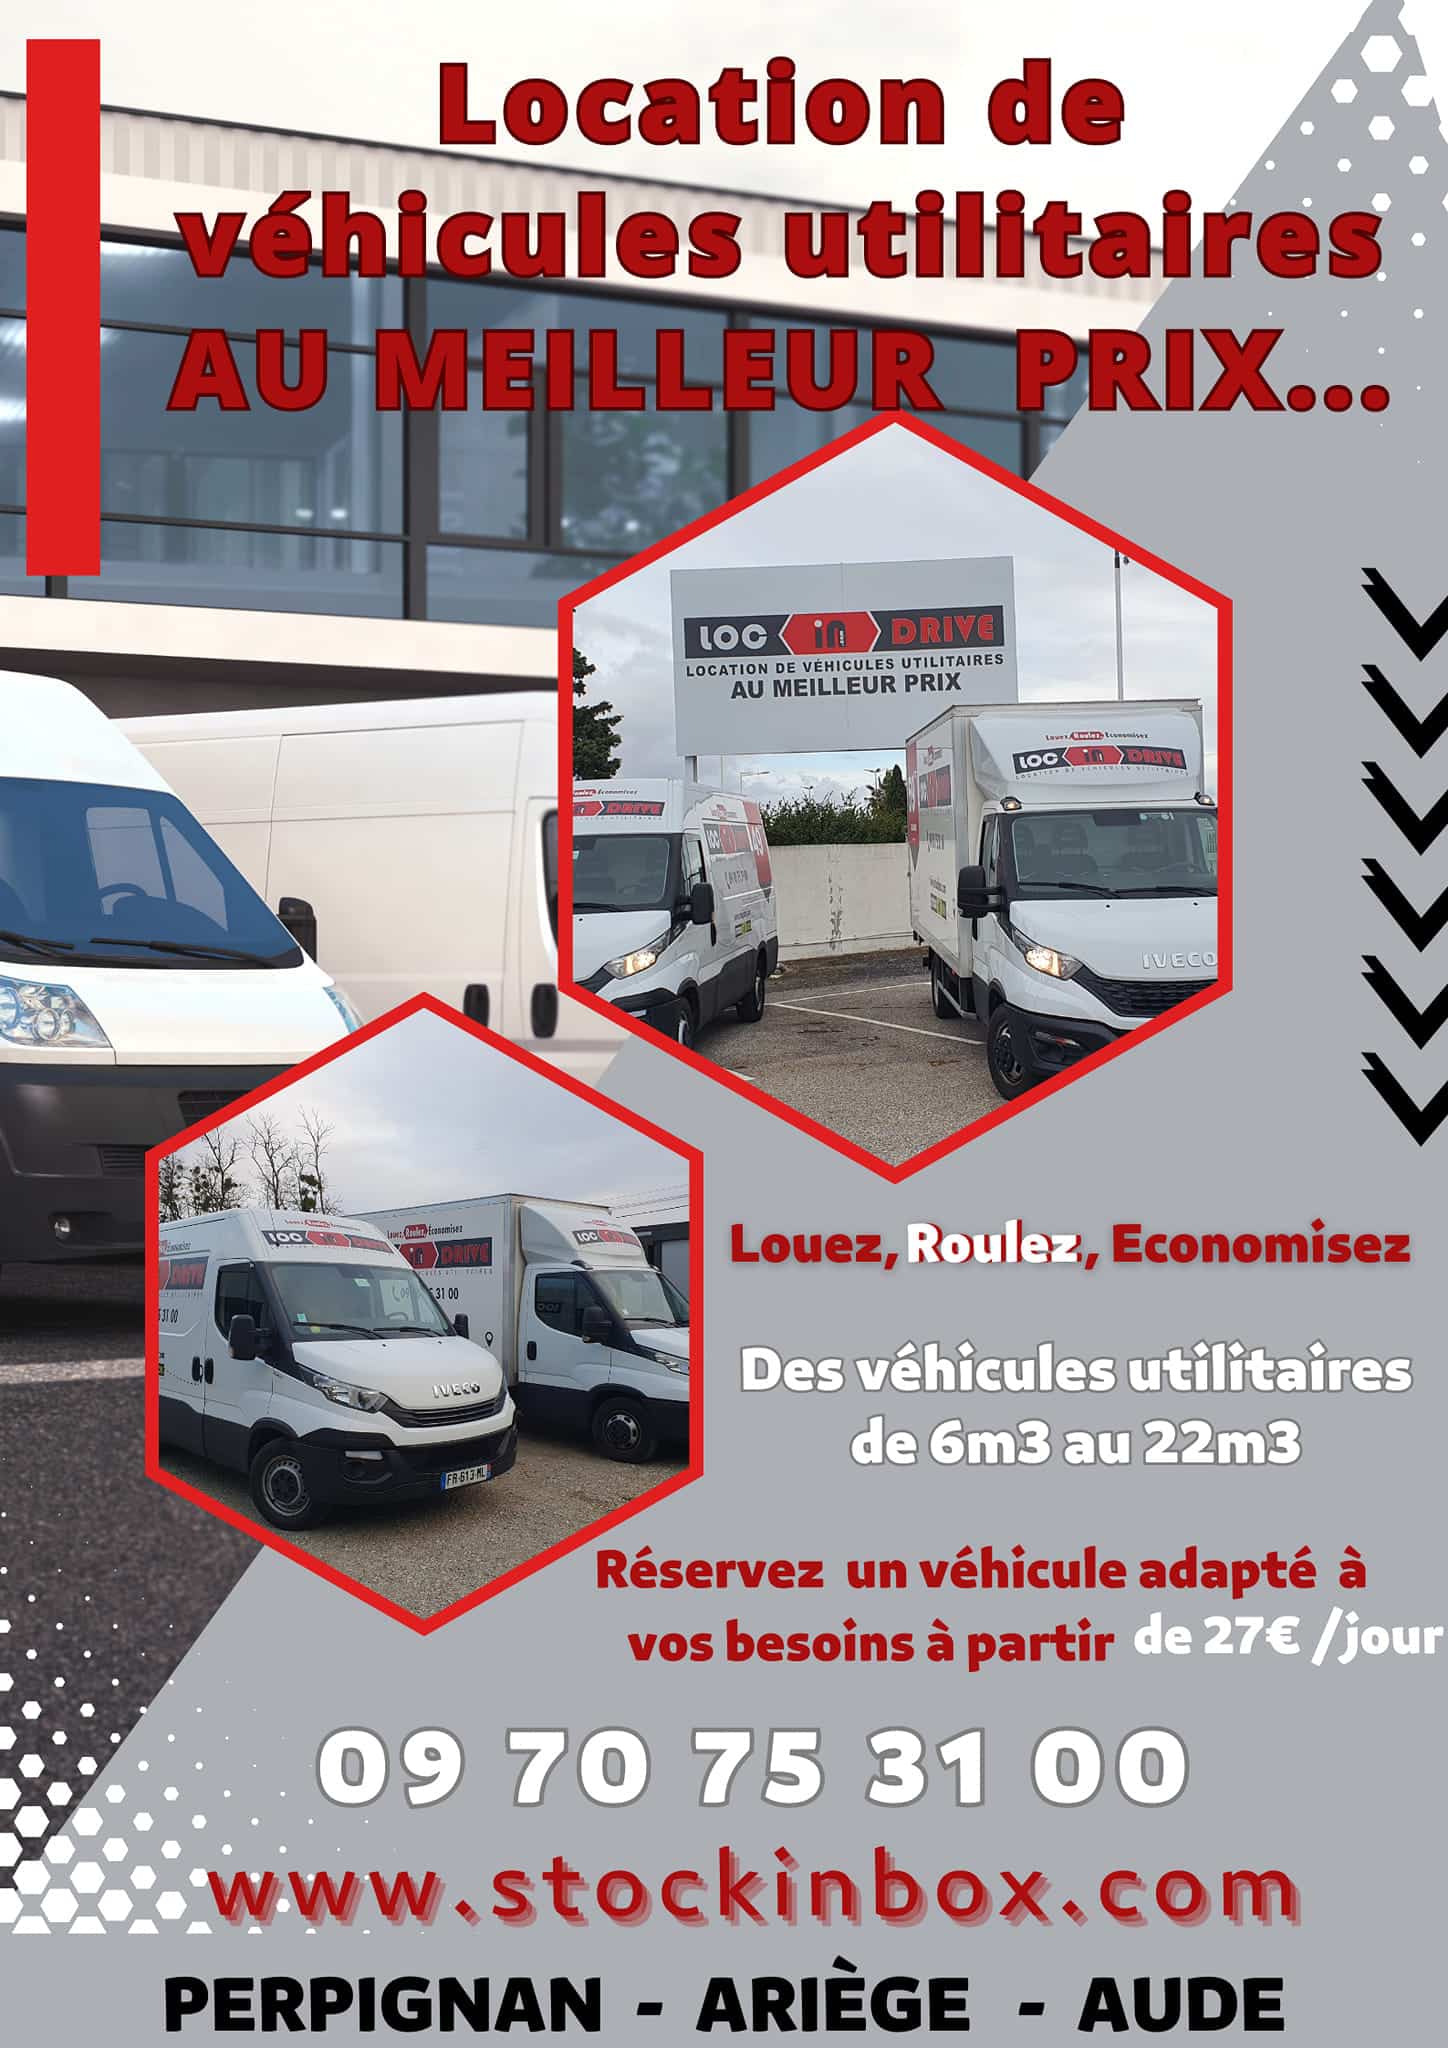 Chez Loc In Drive, large choix de véhicules pour louer un utilitaire I Ariège – Pyrénées Orientales